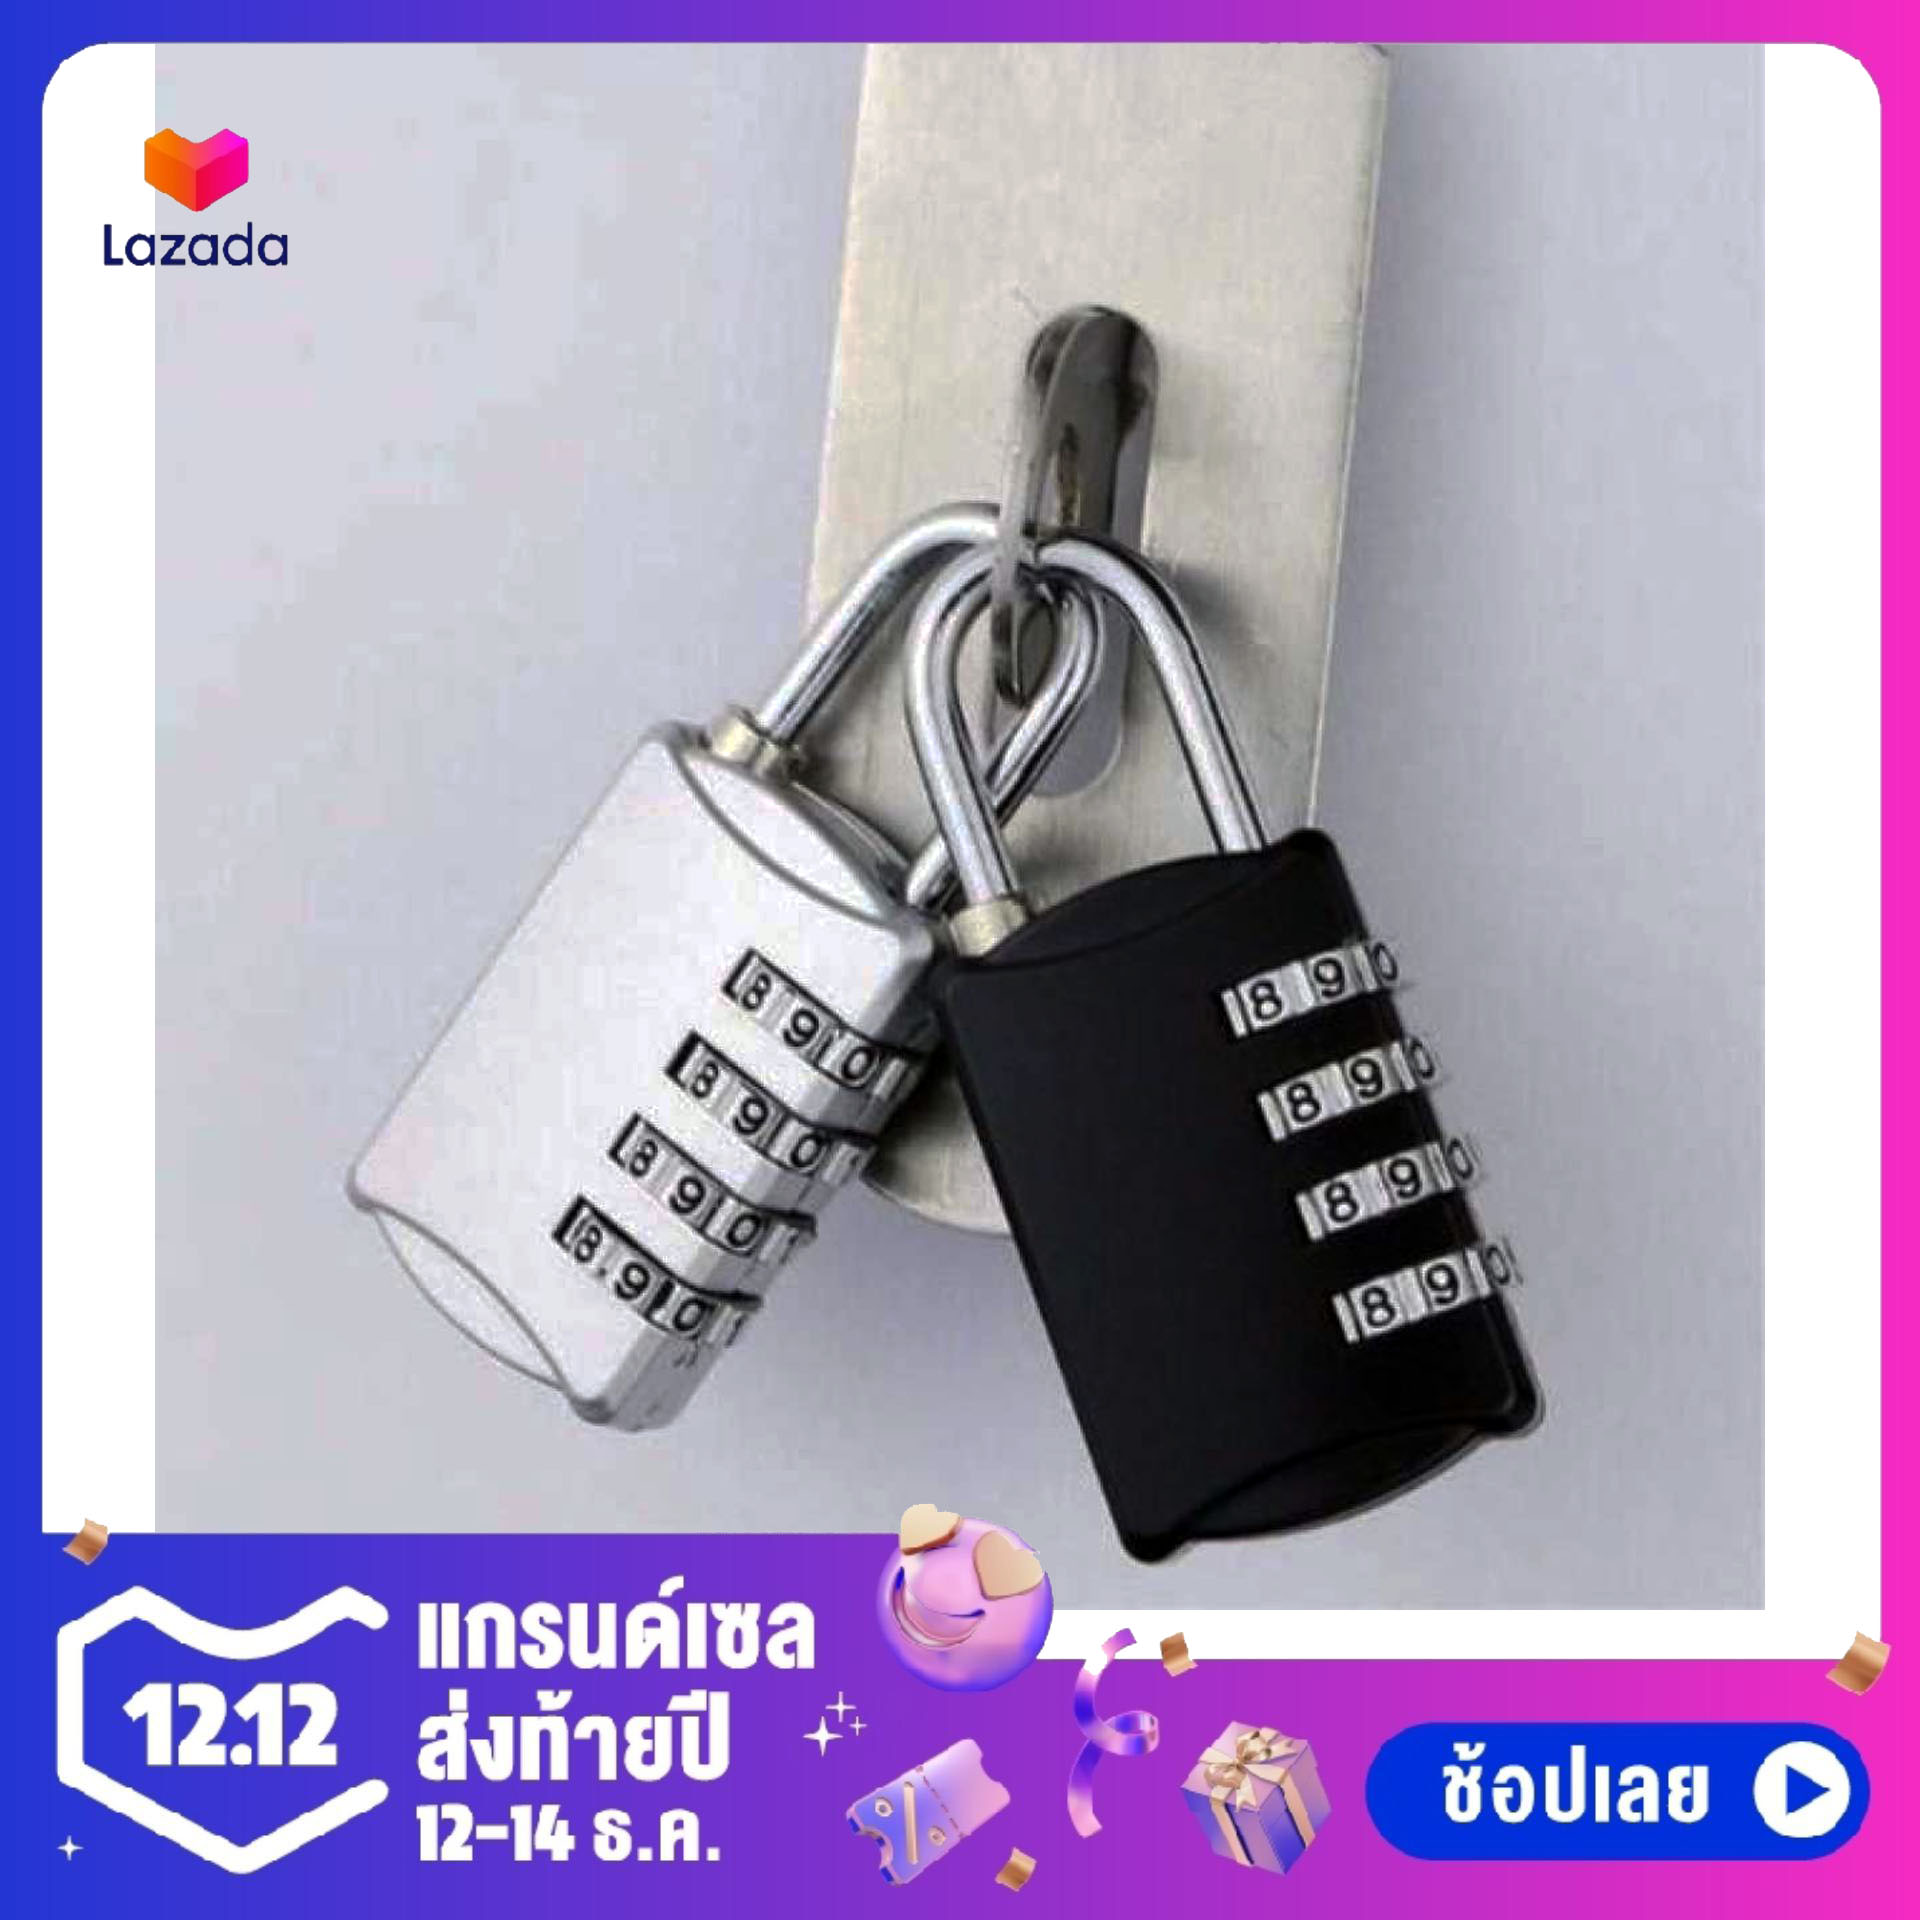 กุญแจล็อคกระเป๋าเดินทางกระเป๋าเดิน ประตู หน้าต่าง และอุปกรณ์อื่นๆ ตั้งรหัสผ่านกุญแจชุดได้ 4 หลัก ขนาด : 2.5 x 0.6 x 5.5 ซม. (สีดำ)